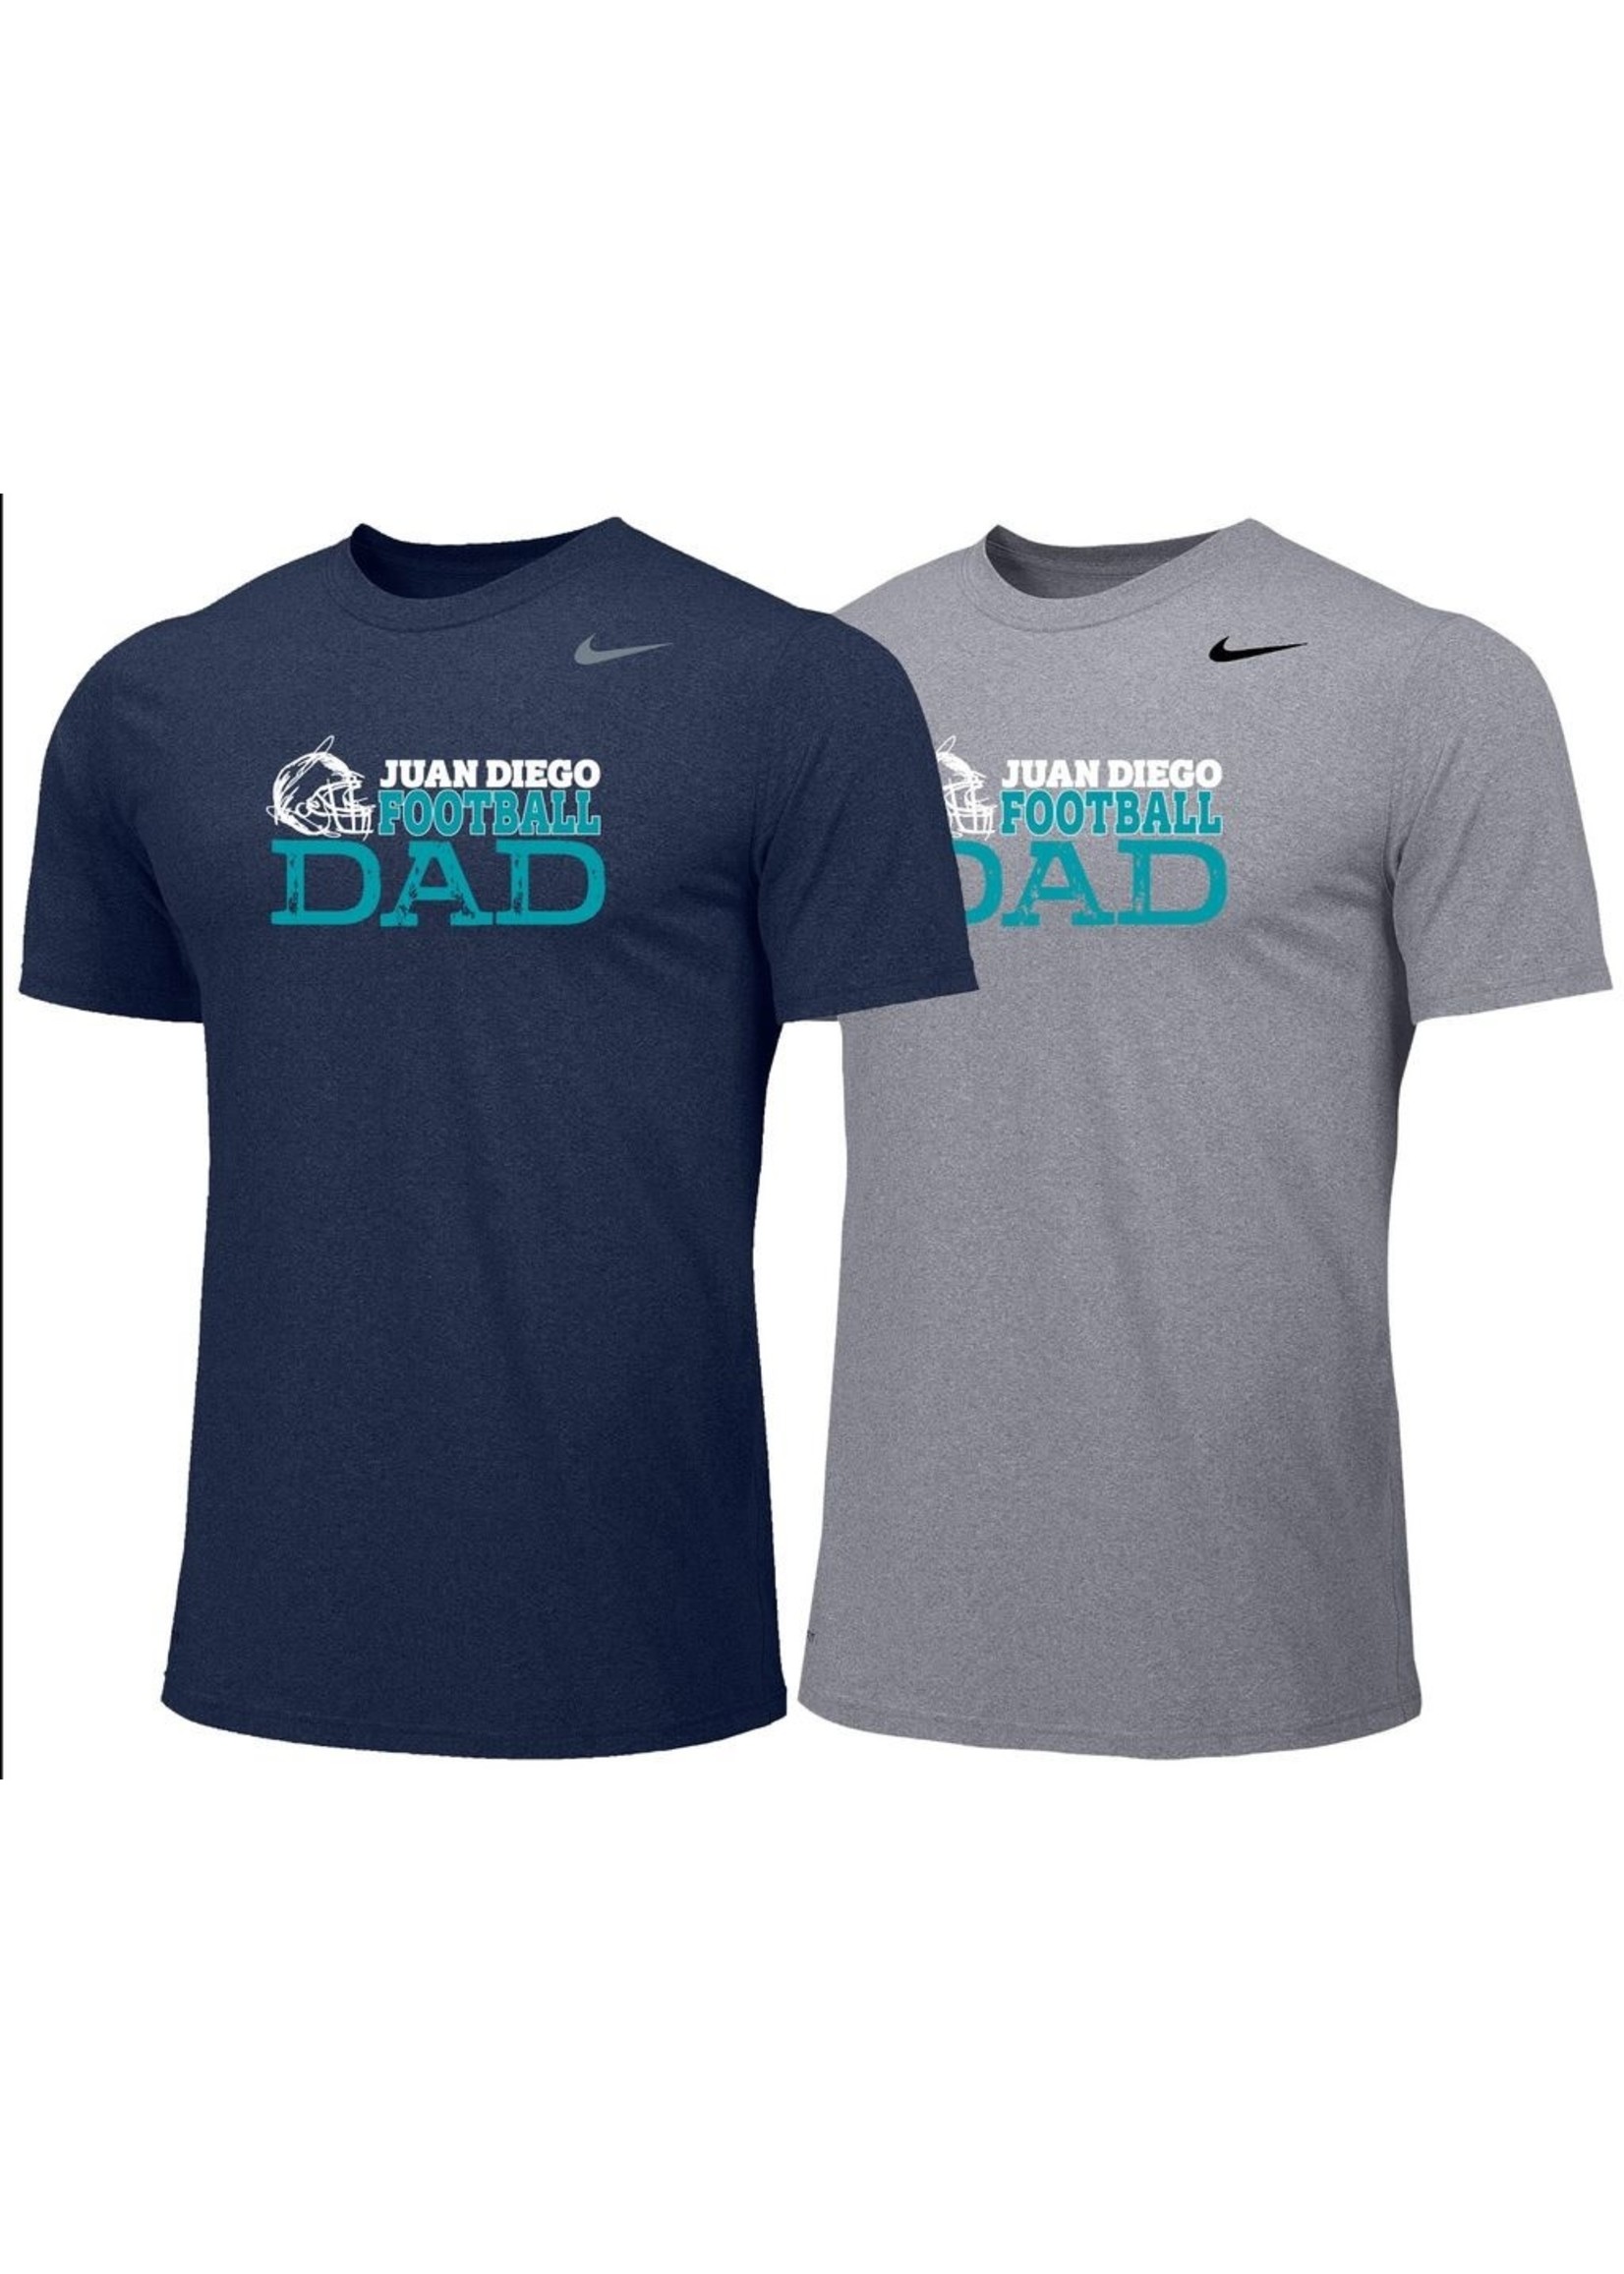 Wedstrijd is meer dan Vergemakkelijken JD Nike Football Dad's Tshirt - Saint Paul's Place